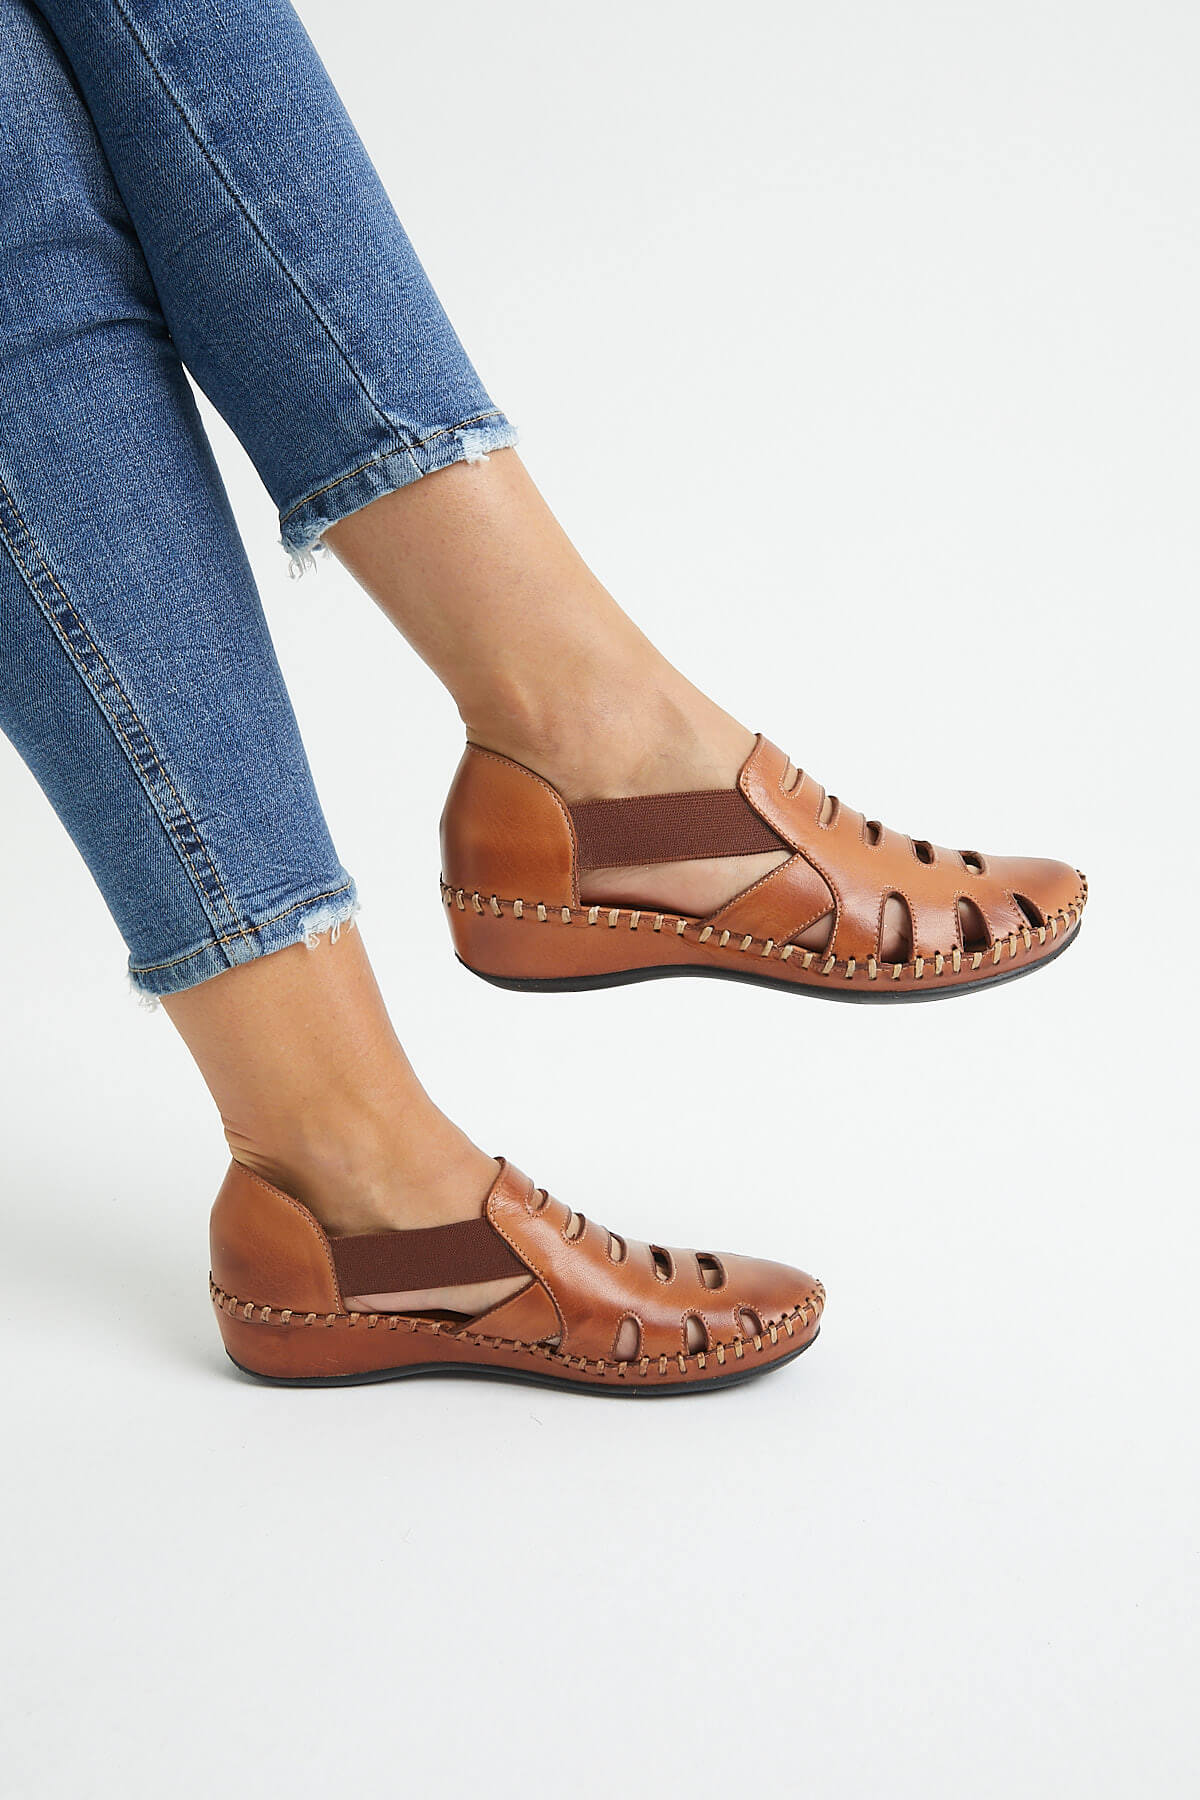 Kadın Comfort Deri Sandalet Taba 18791395